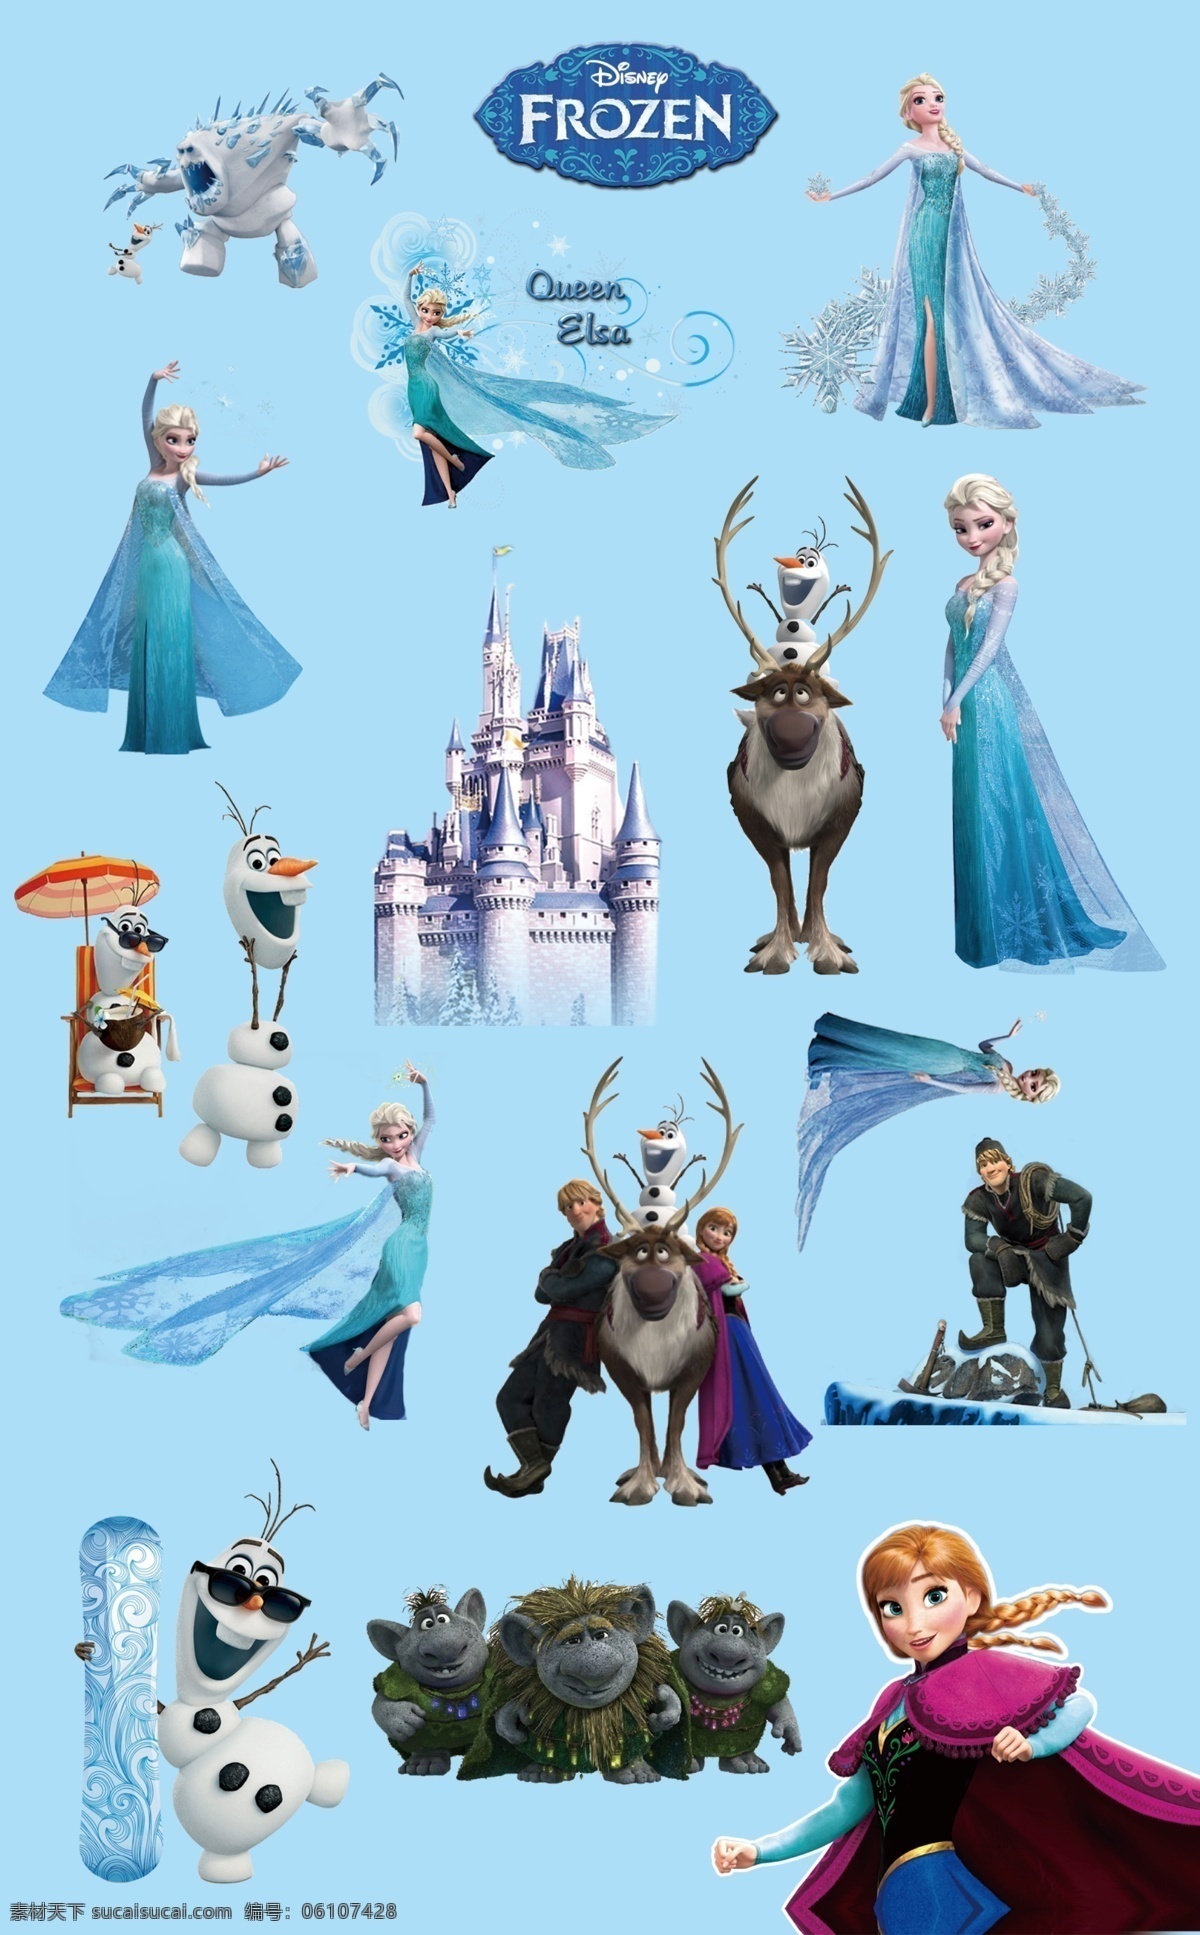 冰雪奇缘 迪士尼动画 卡通人物 迪士尼人物 frozen 分层图 艾莎公主 安娜公主 克里斯托夫 斯文 汉斯 奥洛夫 威斯顿公爵 动漫动画 动漫人物